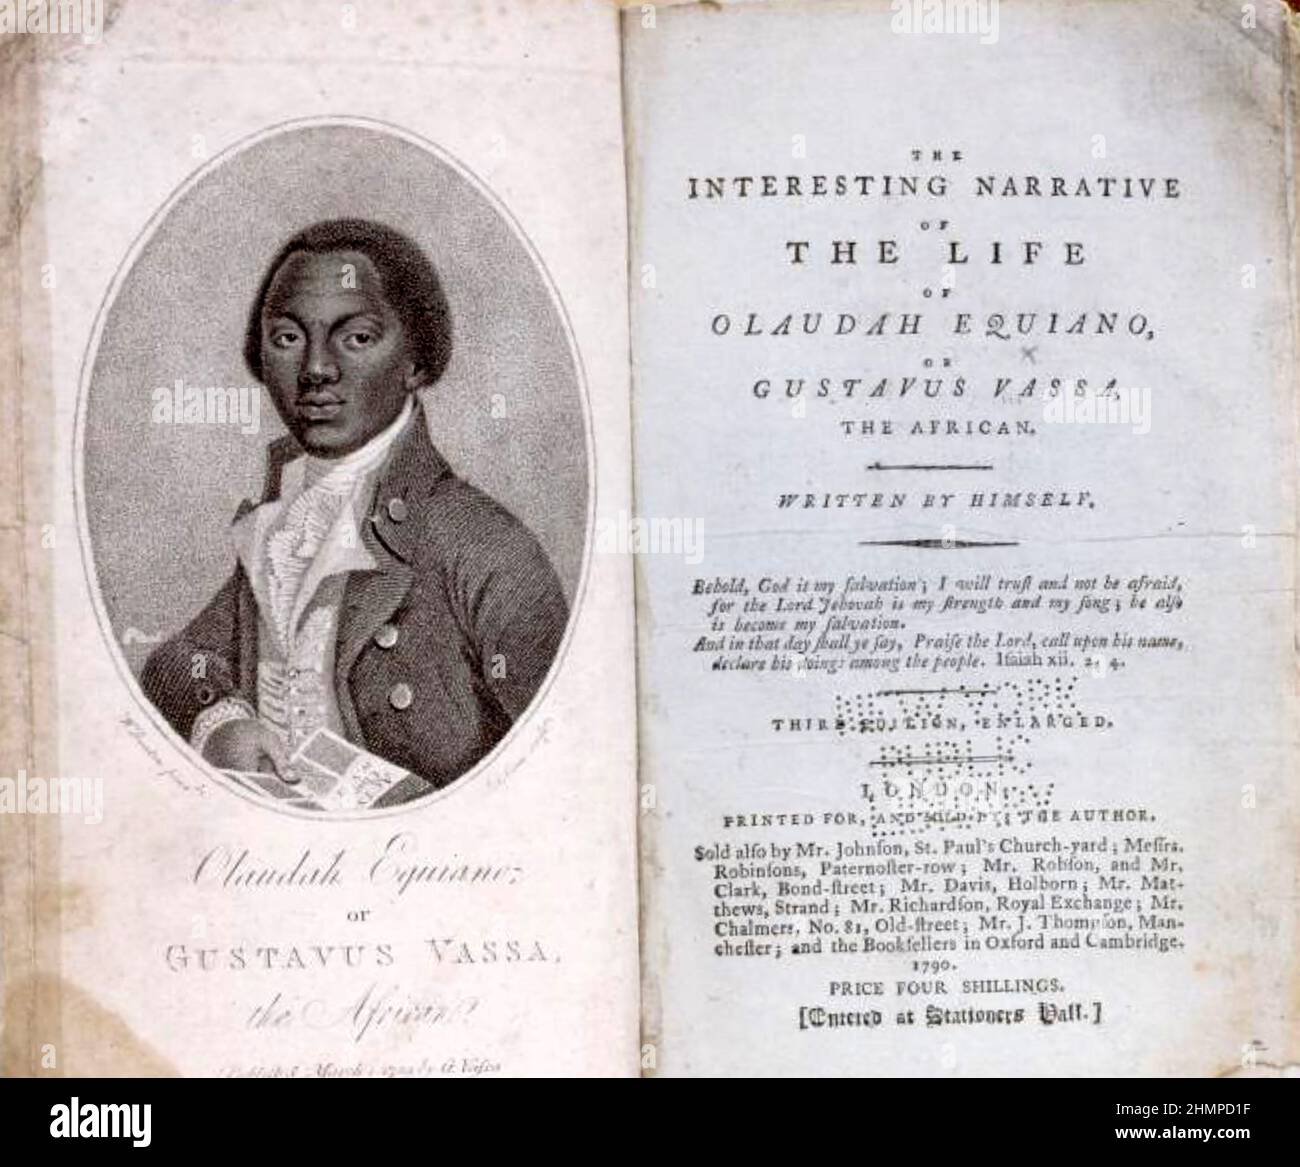 OLAUDAH EQUIANO (c 1745-1797) Titelseite seiner Autobiographie vom Leben als Sklave von 1789 Stockfoto